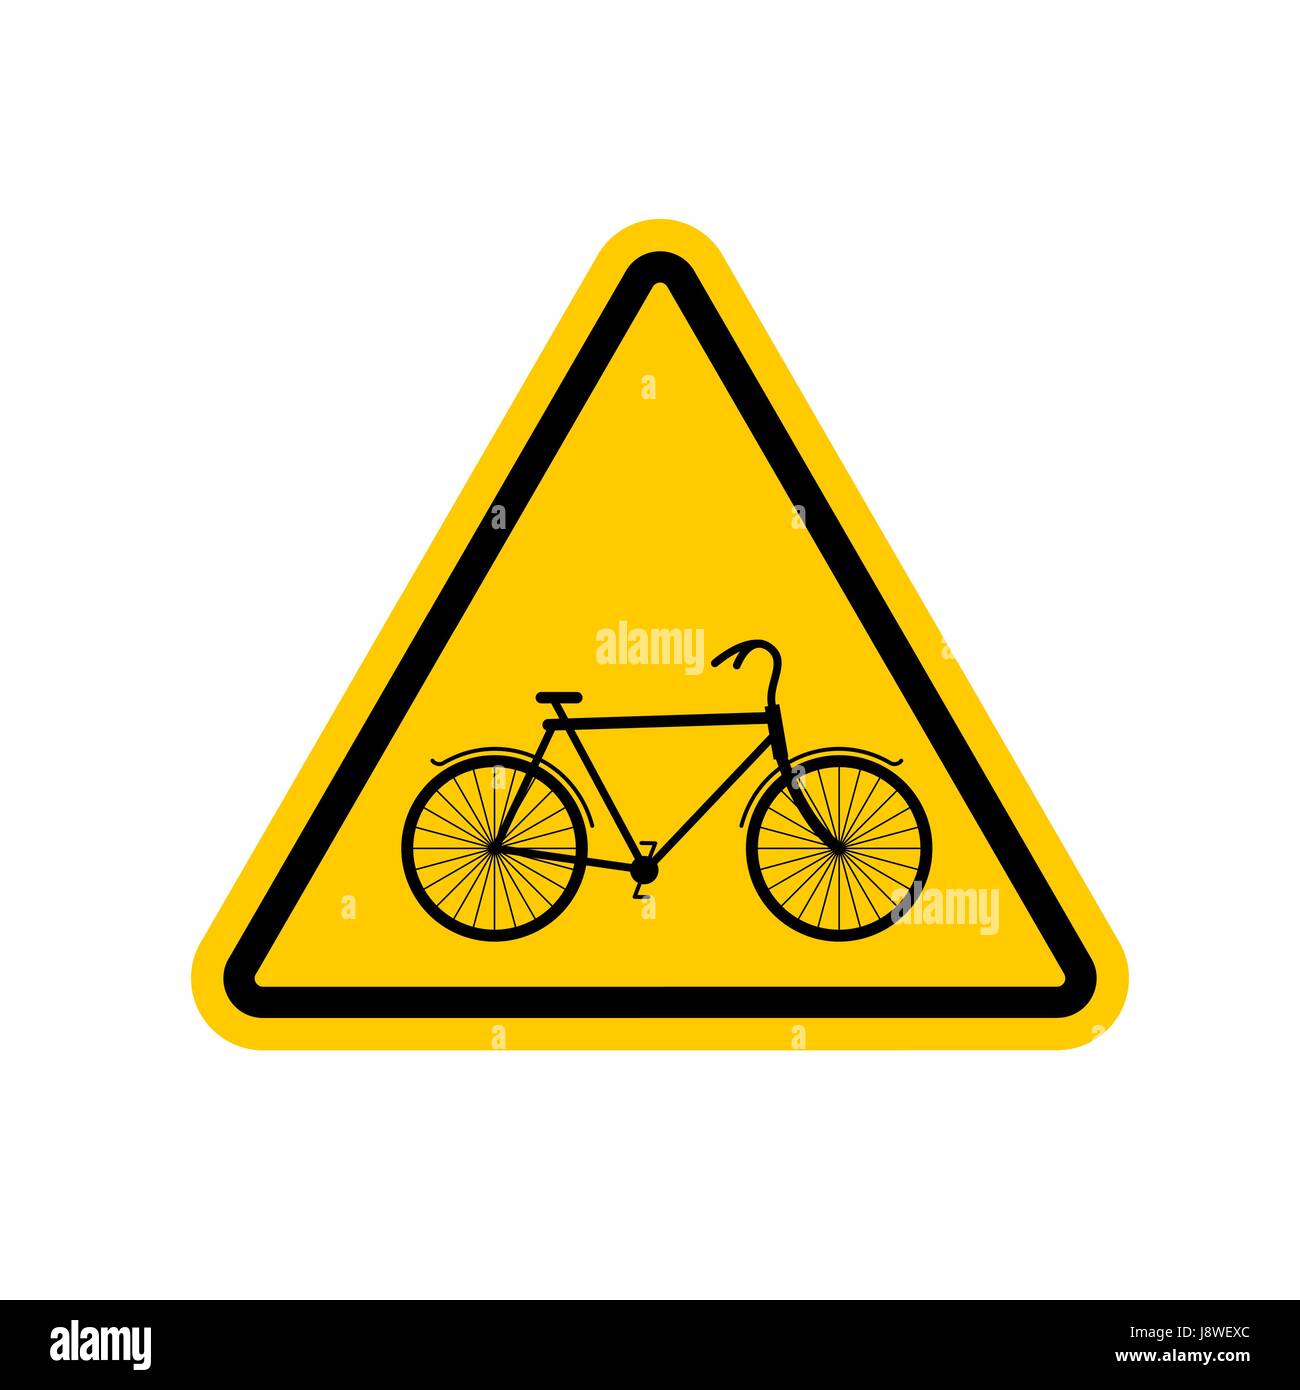 Achtung Radfahrer. Fahrrad auf gelbes Dreieck. Verkehrsschild Vorsicht  Radfahrer Stock-Vektorgrafik - Alamy